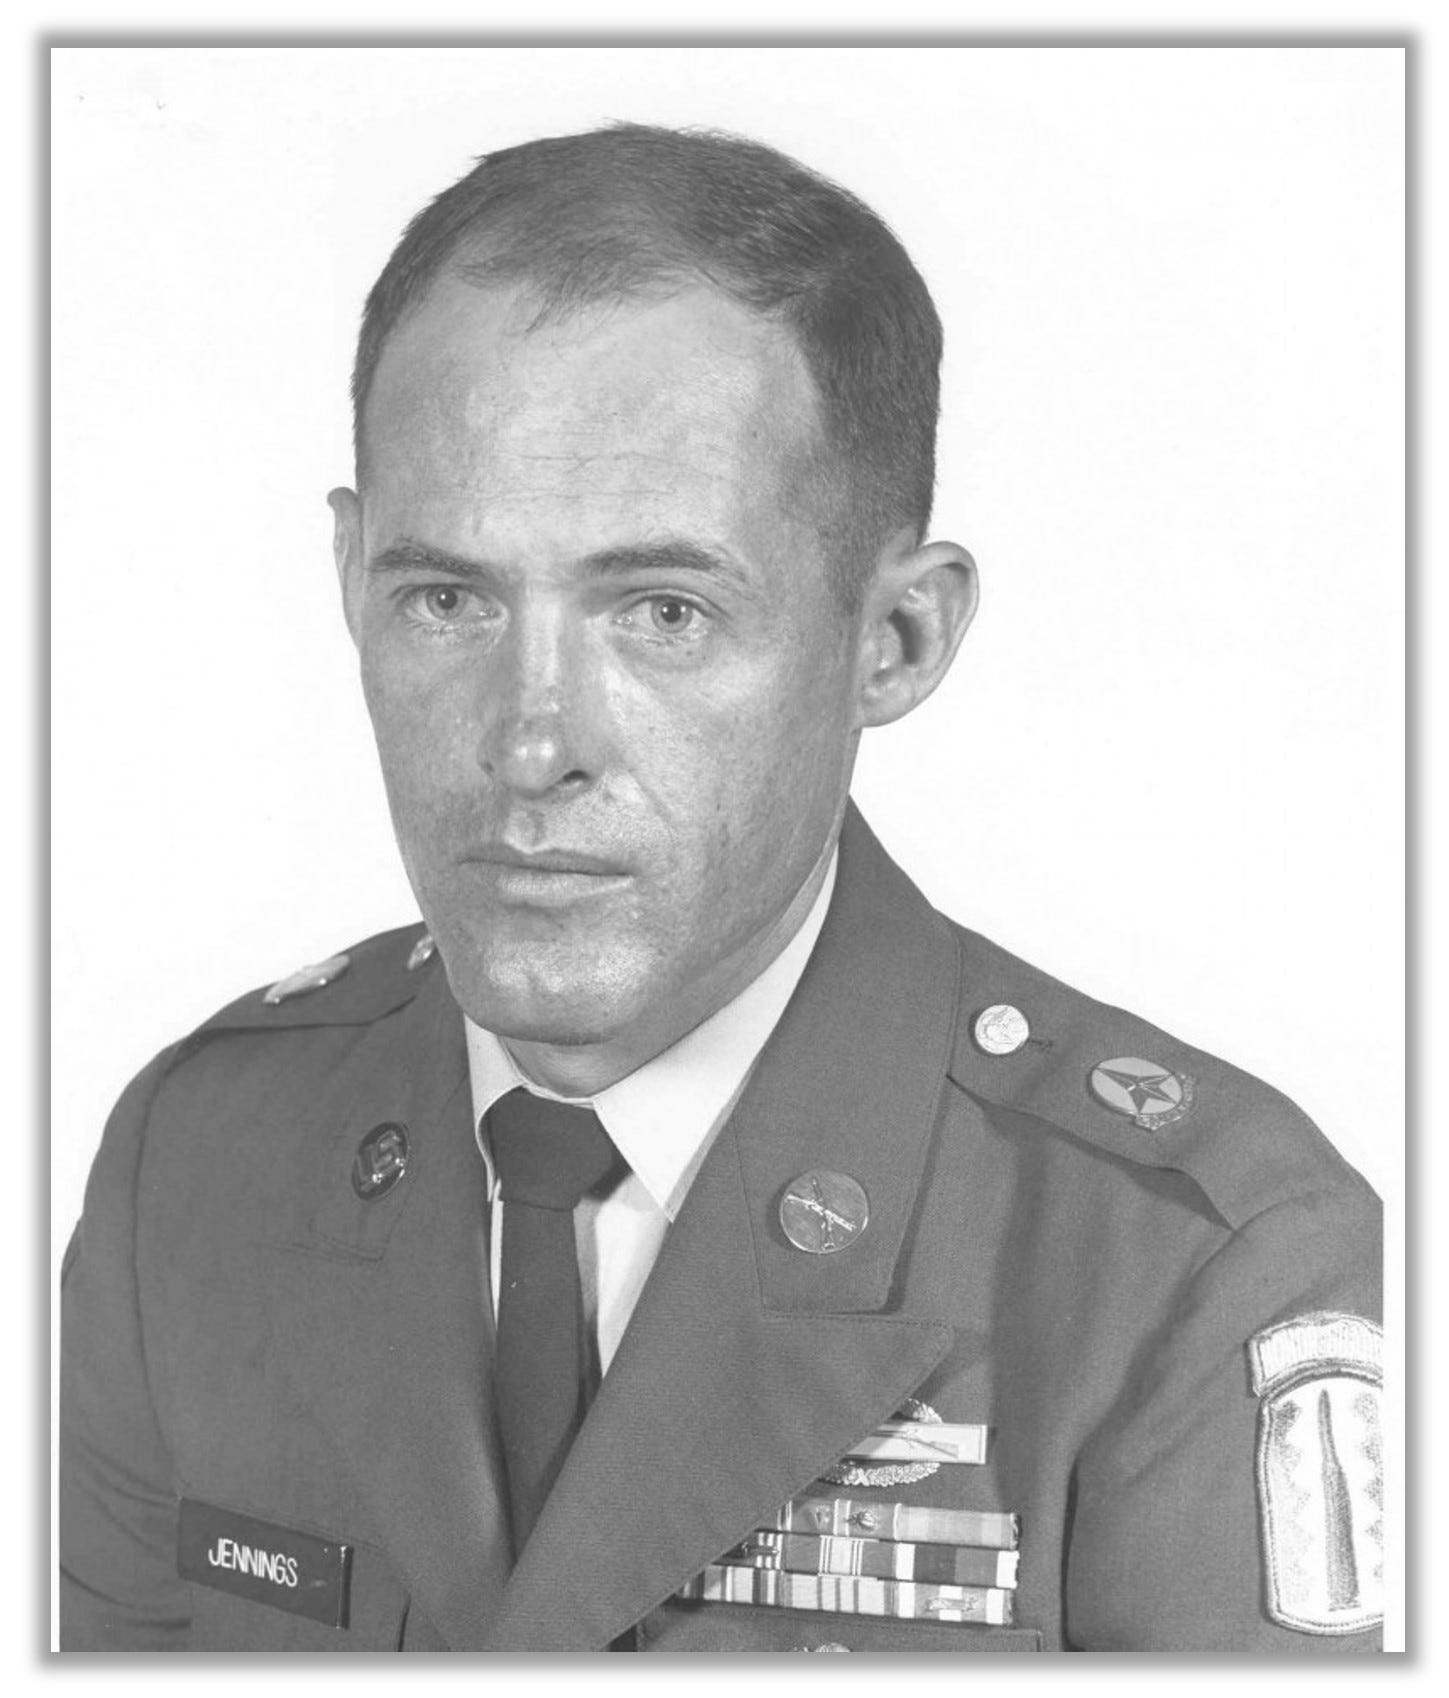 Headshot of Delbert Jennings, in uniform.